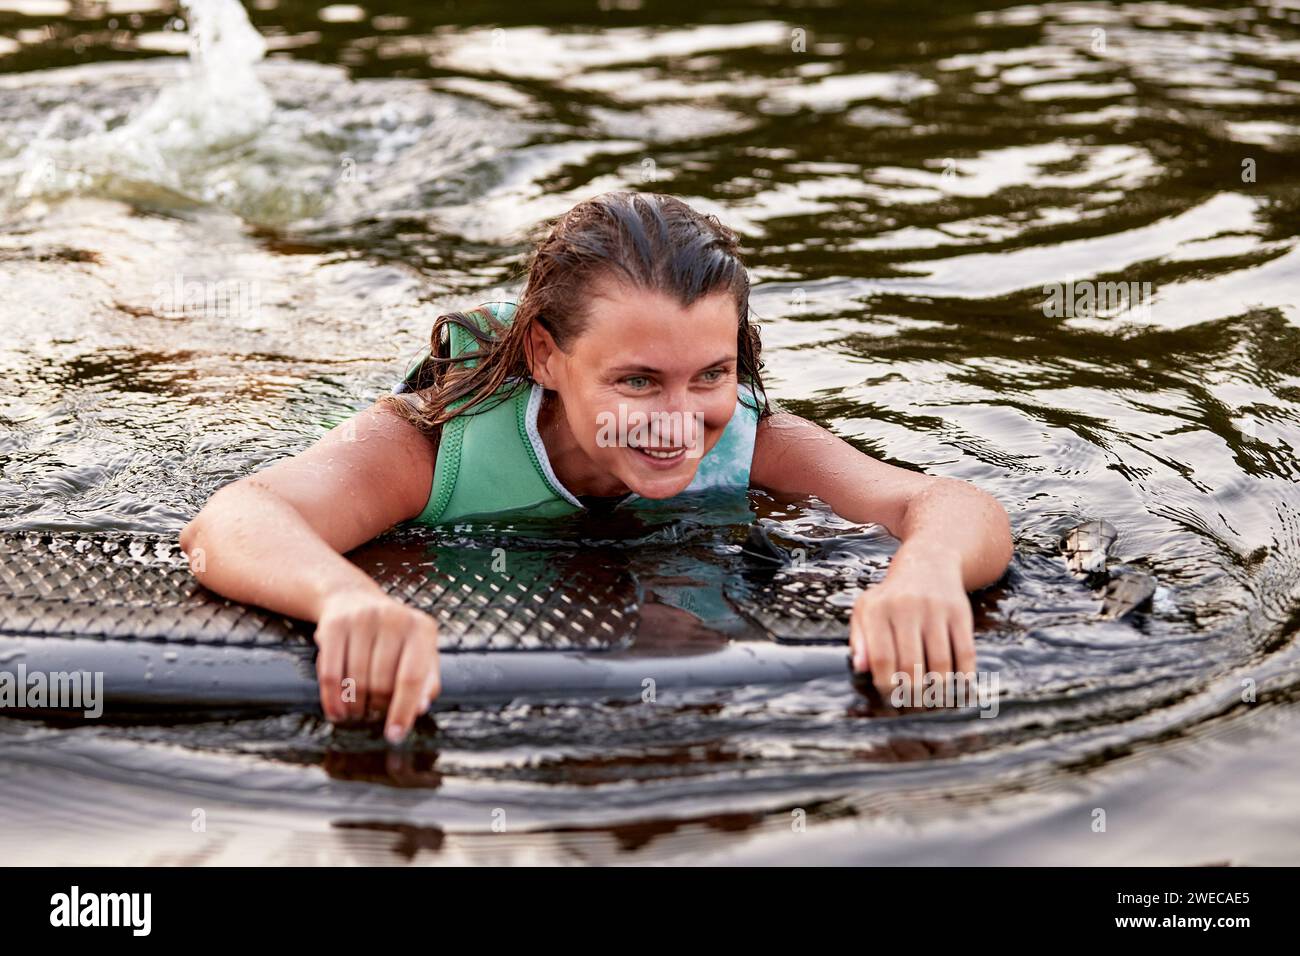 La giovane ragazza sportiva con un giubbotto di salvataggio verde nuota in acqua con un wakeboard in mano. La sportiva felice si sta preparando per un ripido wakebo Foto Stock